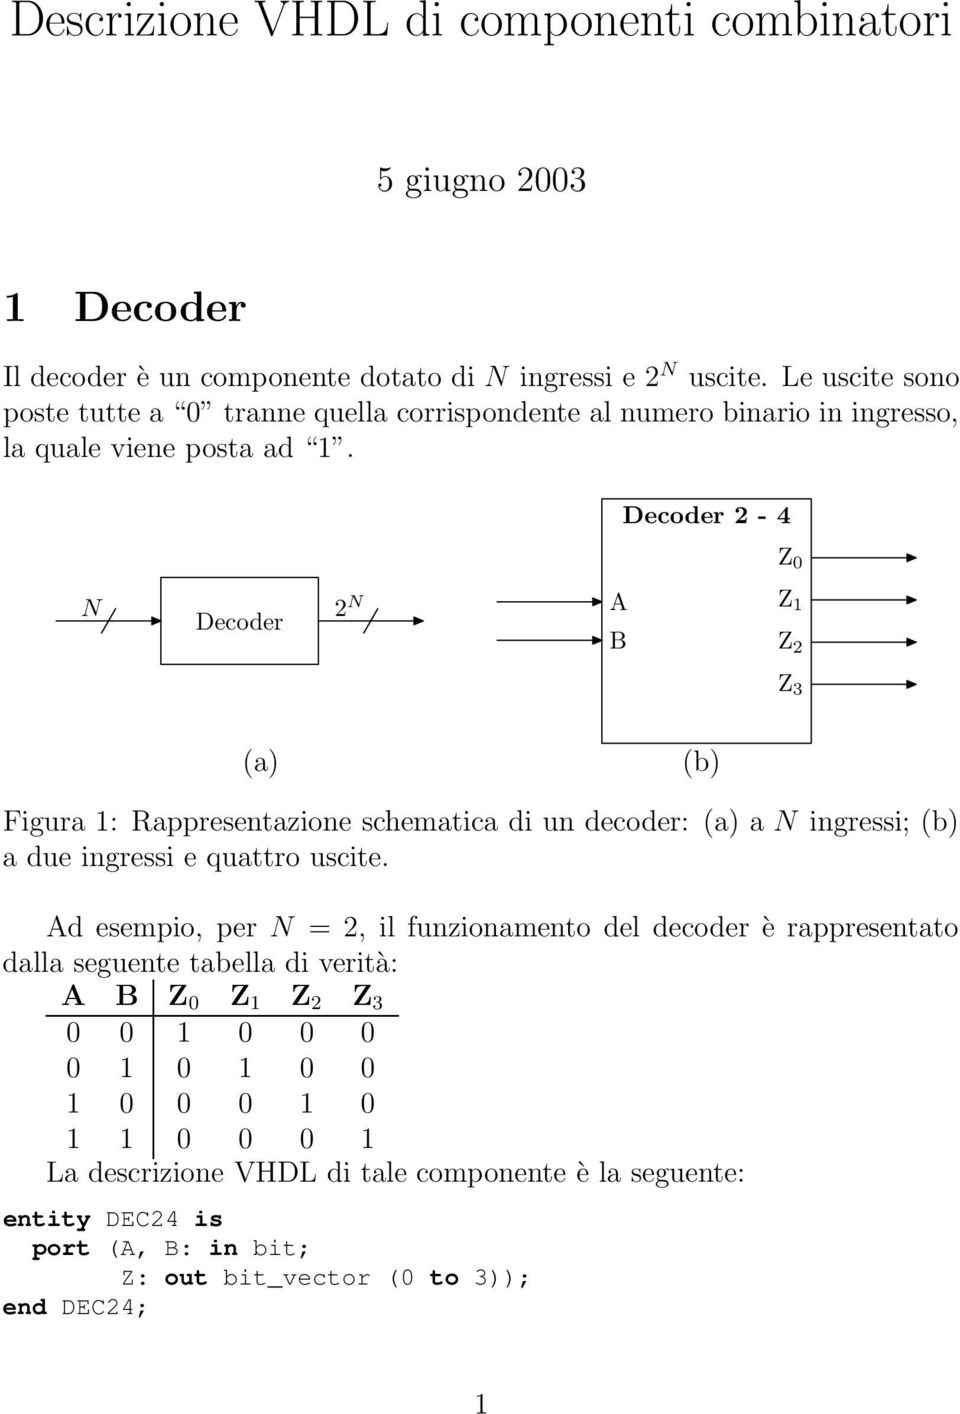 Decoder 2-4 0 N Decoder 2 N 1 2 3 (a) (b) Figura 1: Rappresentazione schematica di un decoder: (a) a N ingressi; (b) a due ingressi e quattro uscite.